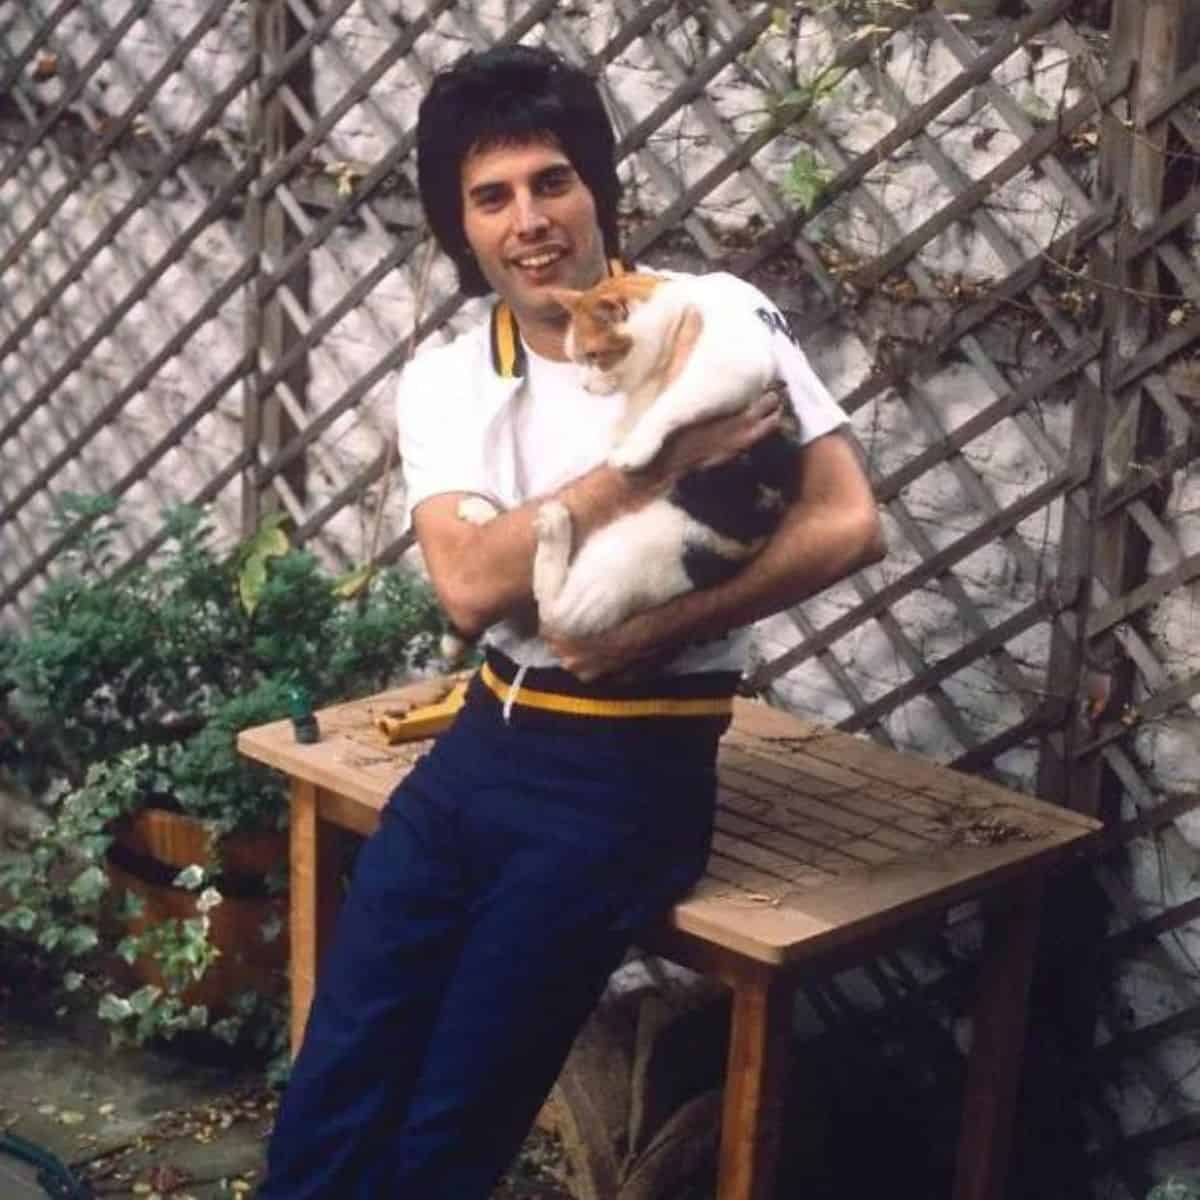 freddie holding a cat in garden